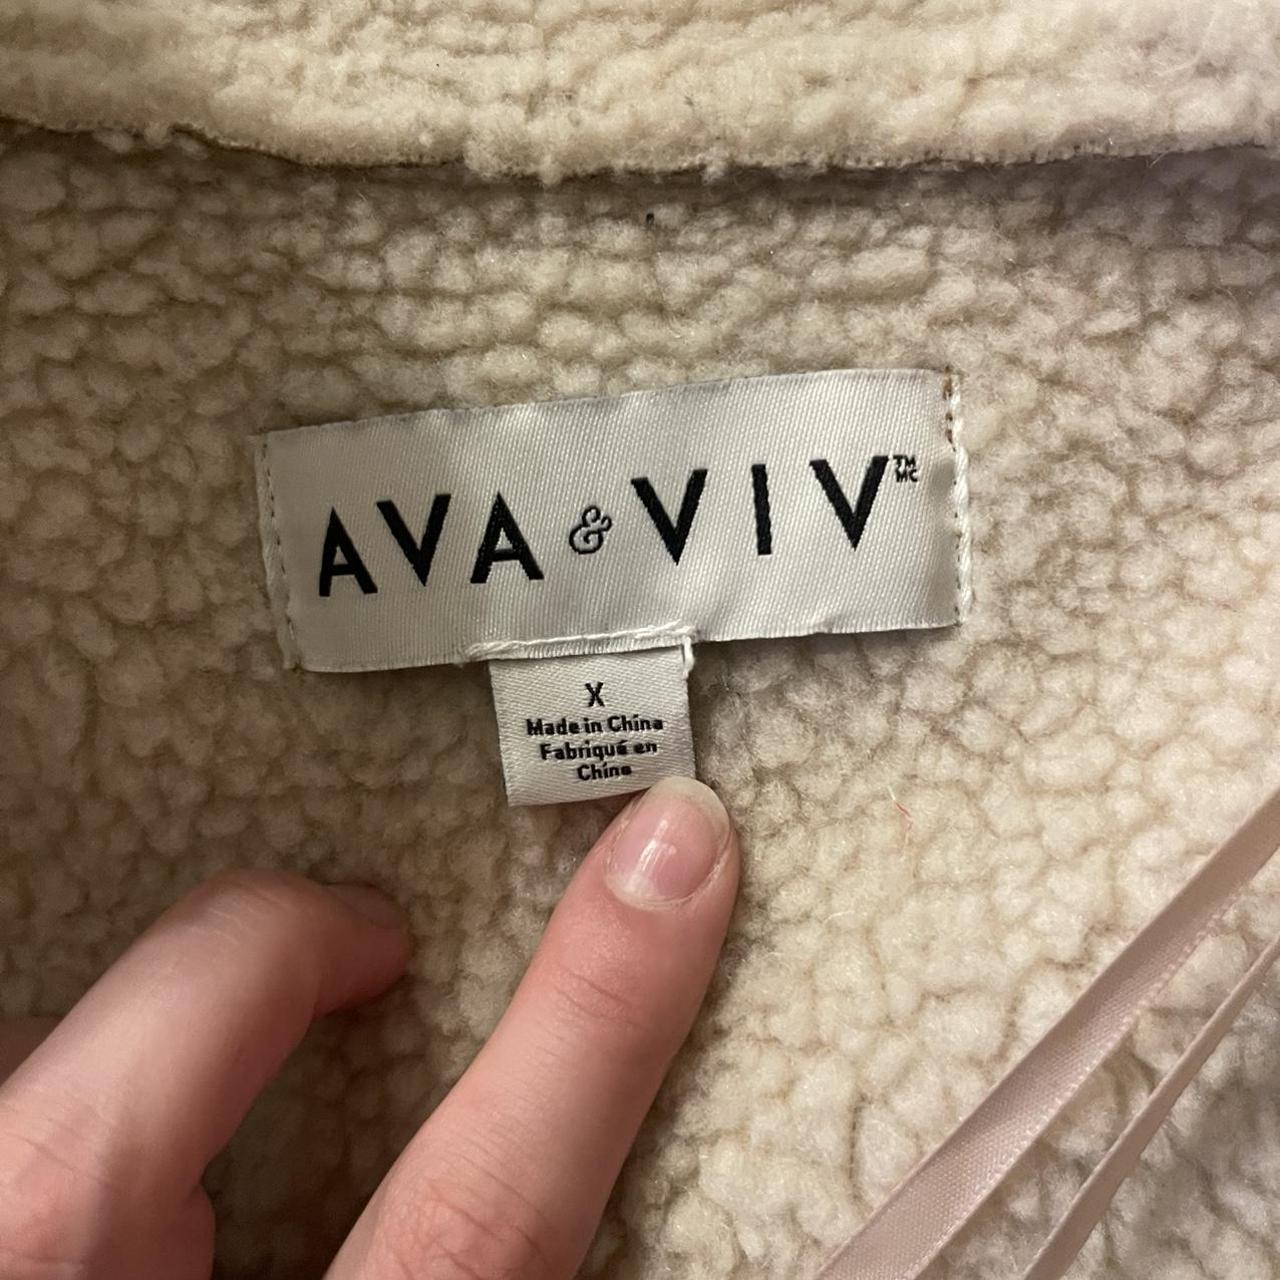 Ava Viv suede brown/tan Sherpa fuzzy jacket So so - Depop